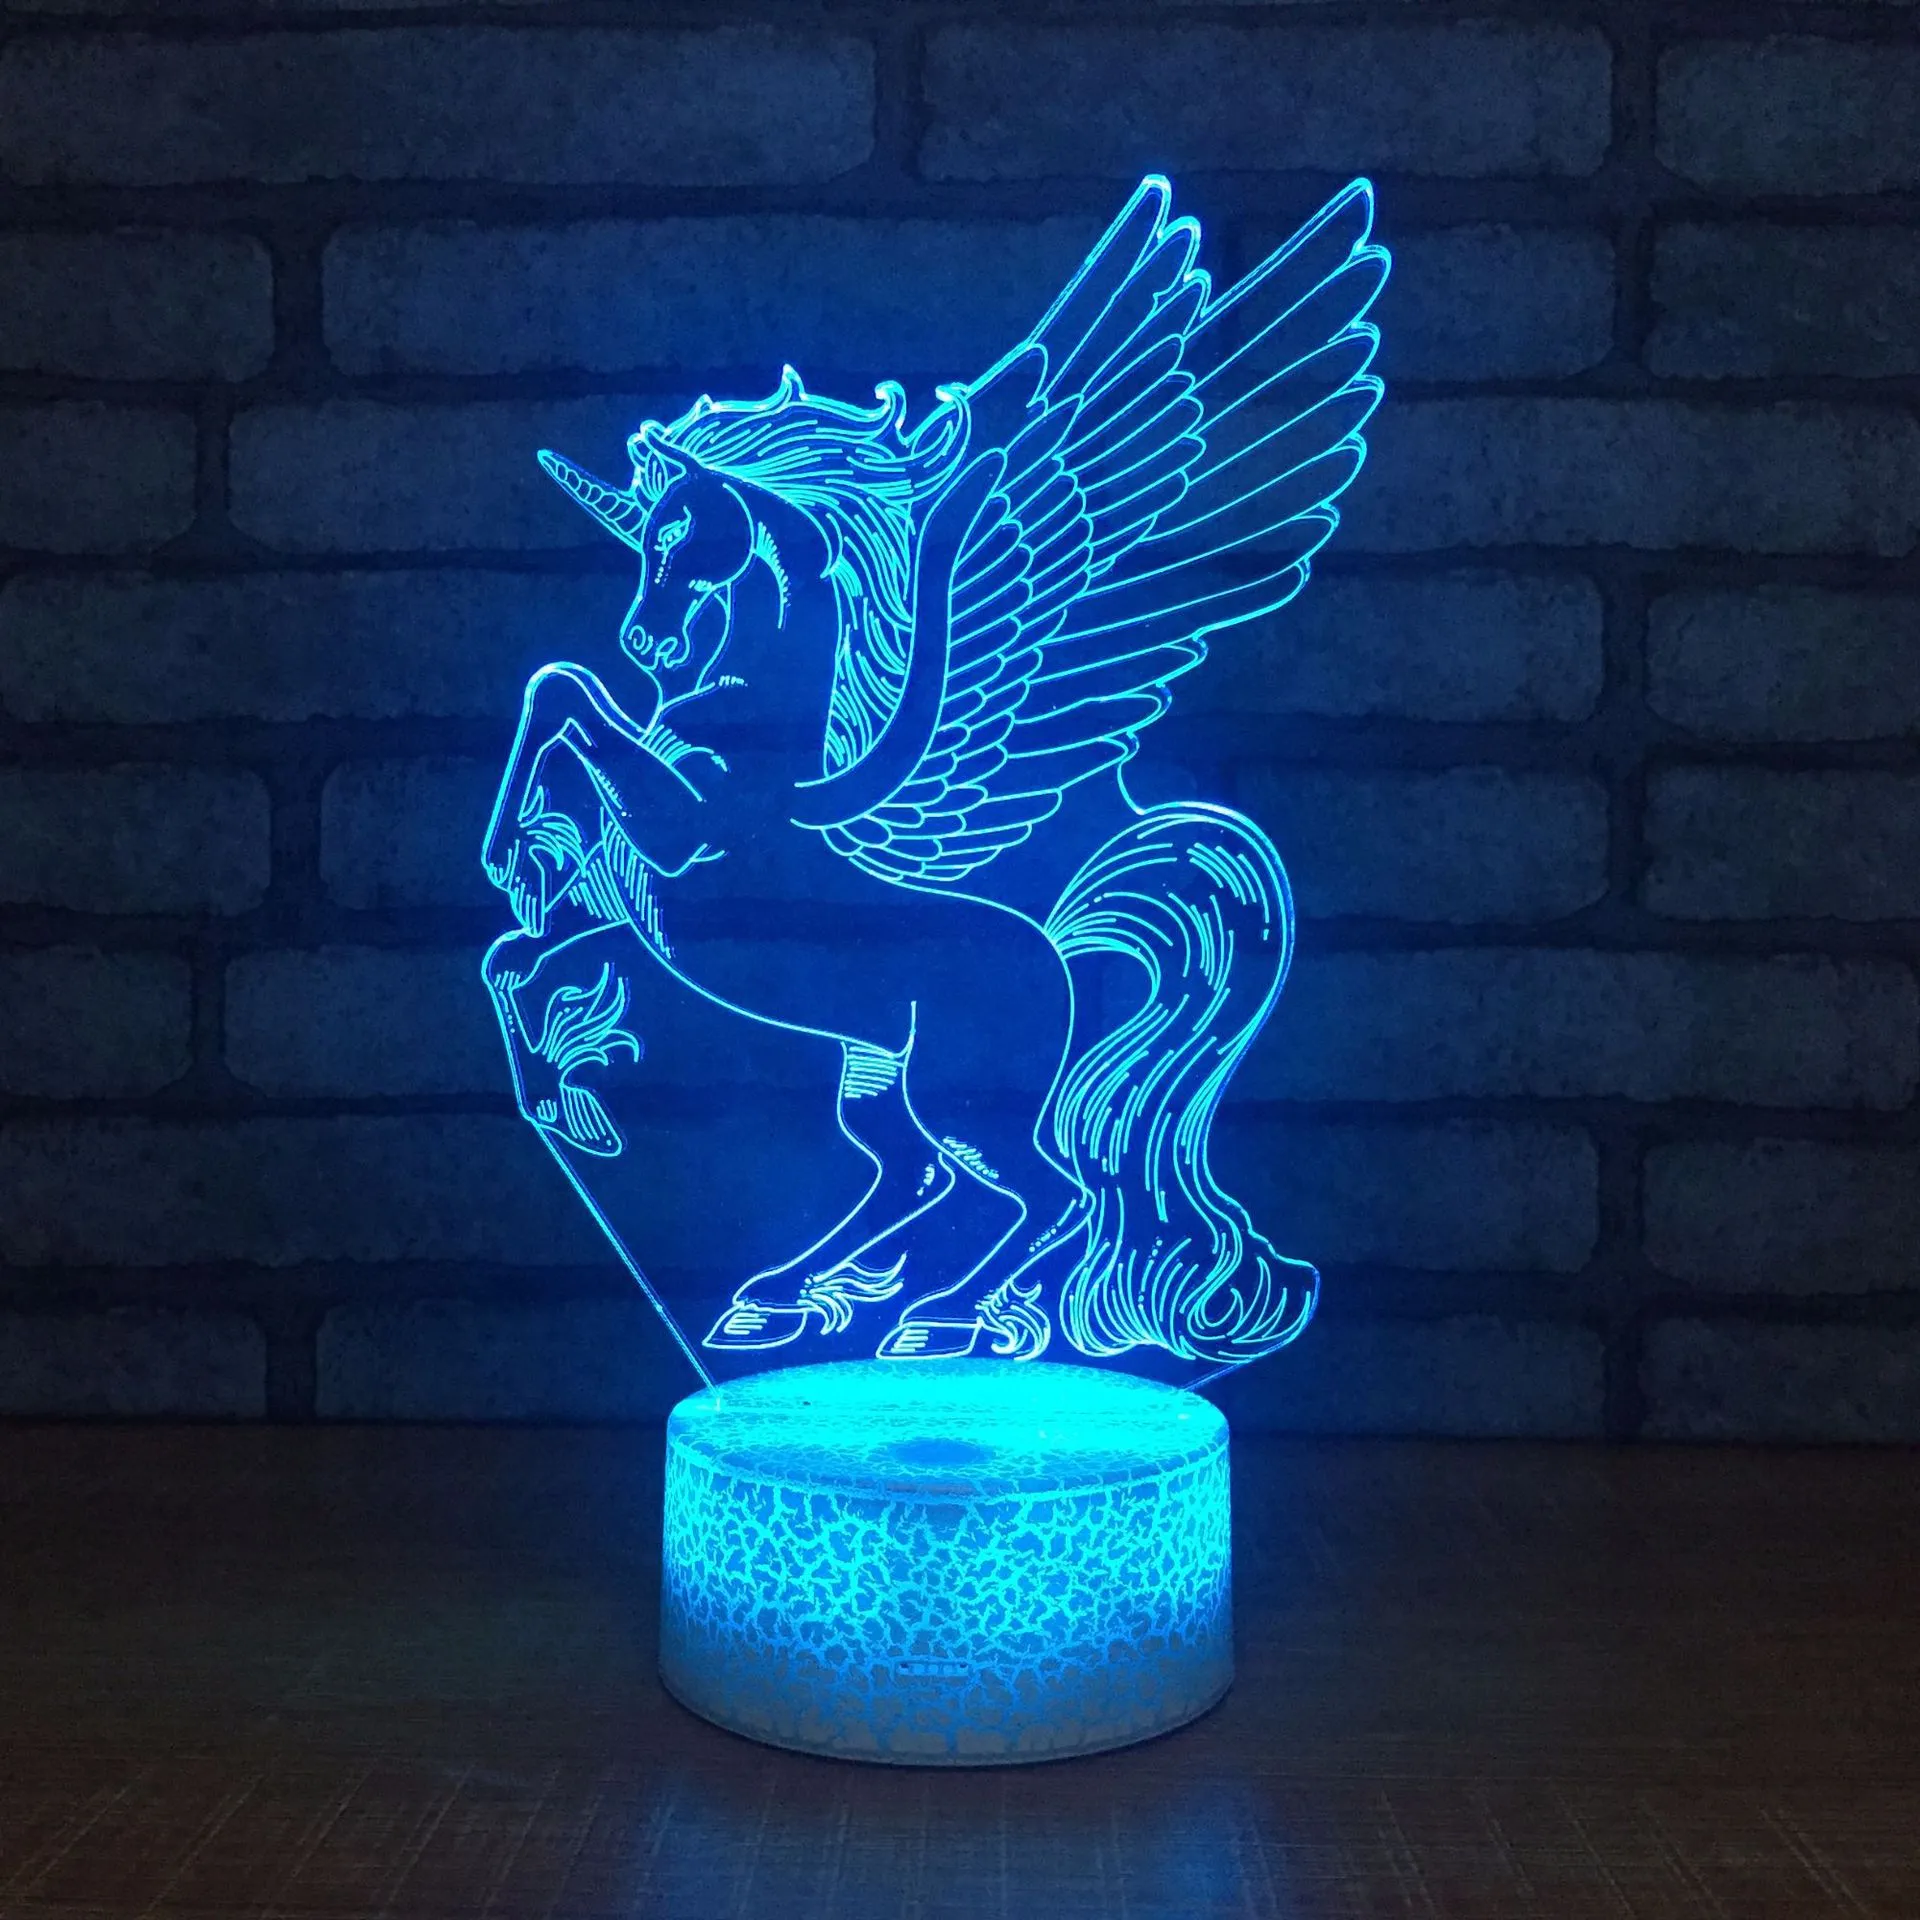 Acryl 7 Farbe Meditation 3D LED Nachtlicht Schlafzimmer Lampe Wohnzimmer Lichter Schreibtisch Tisch Dekoration Nachtlicht